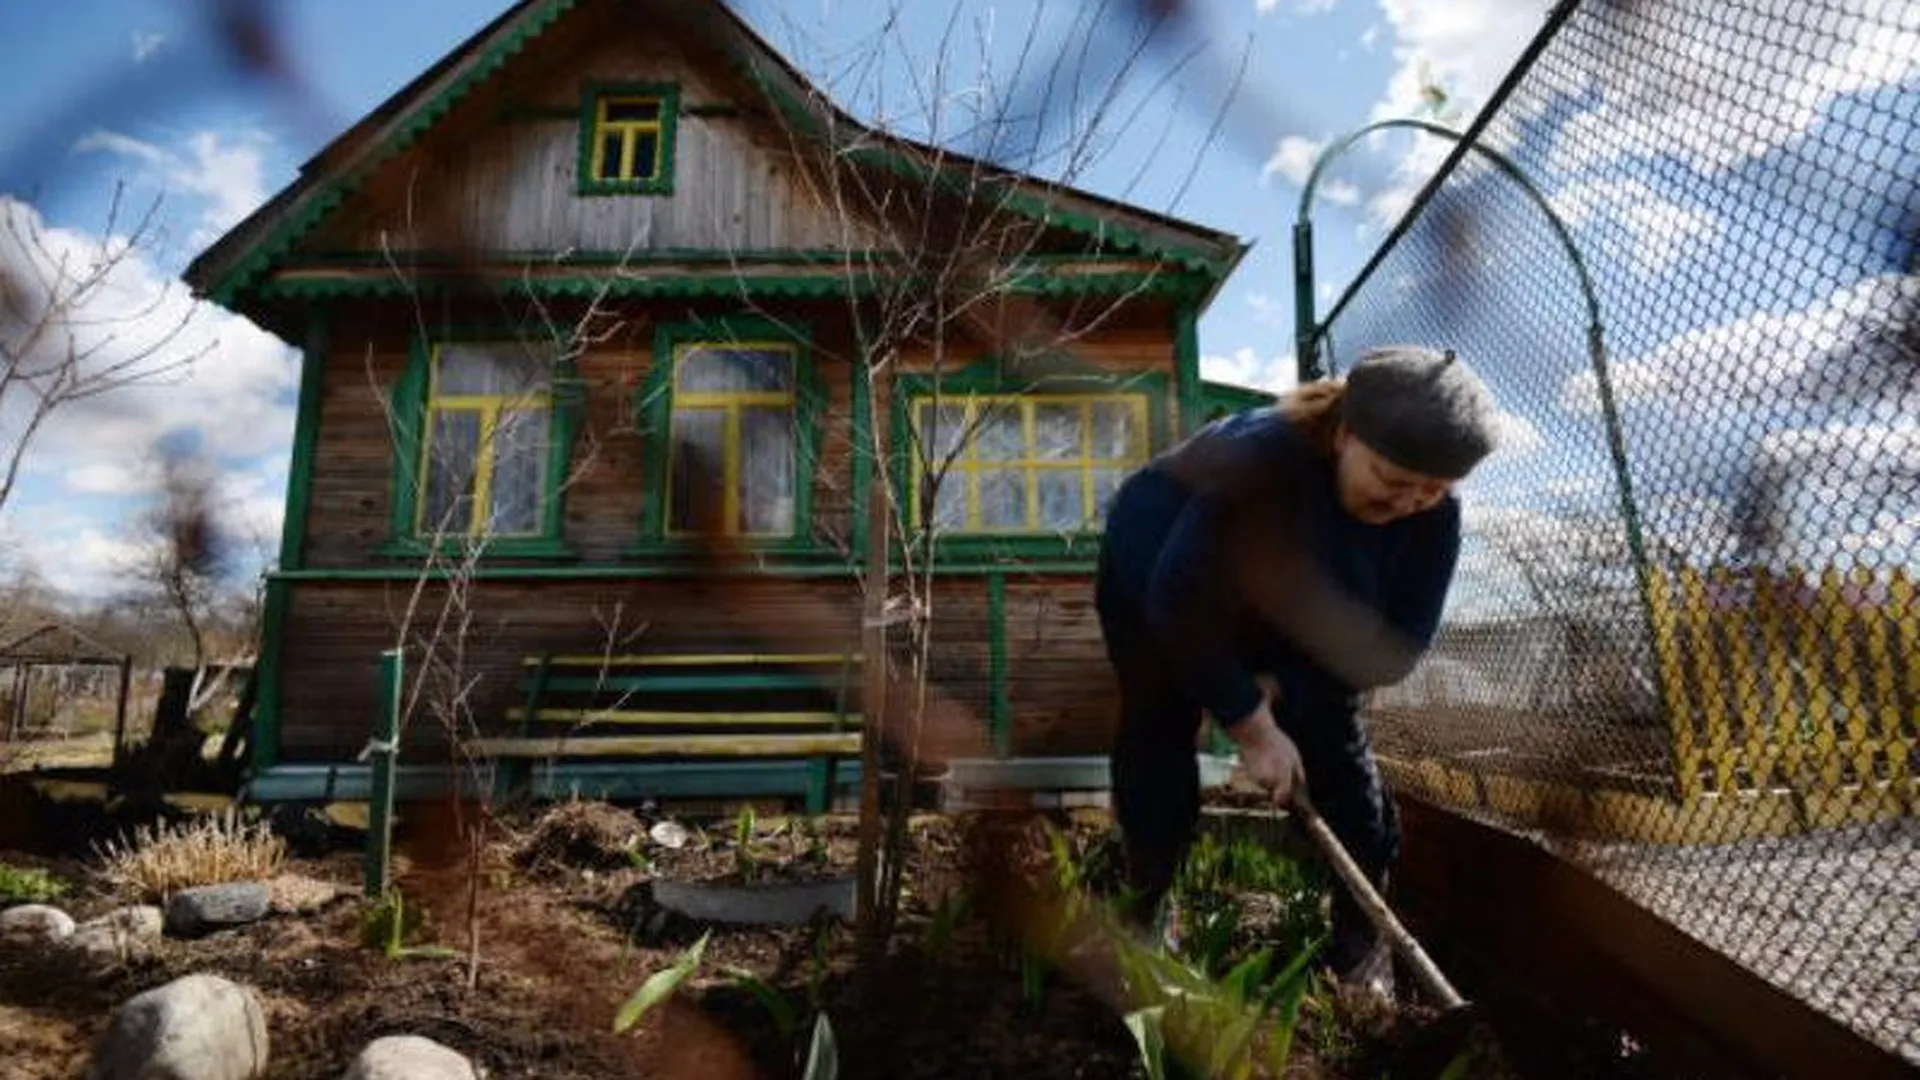 Бабушка-москвичка лишилась сбережений из-за лживых обещаний директора стройфирмы отремонтировать ее дачу